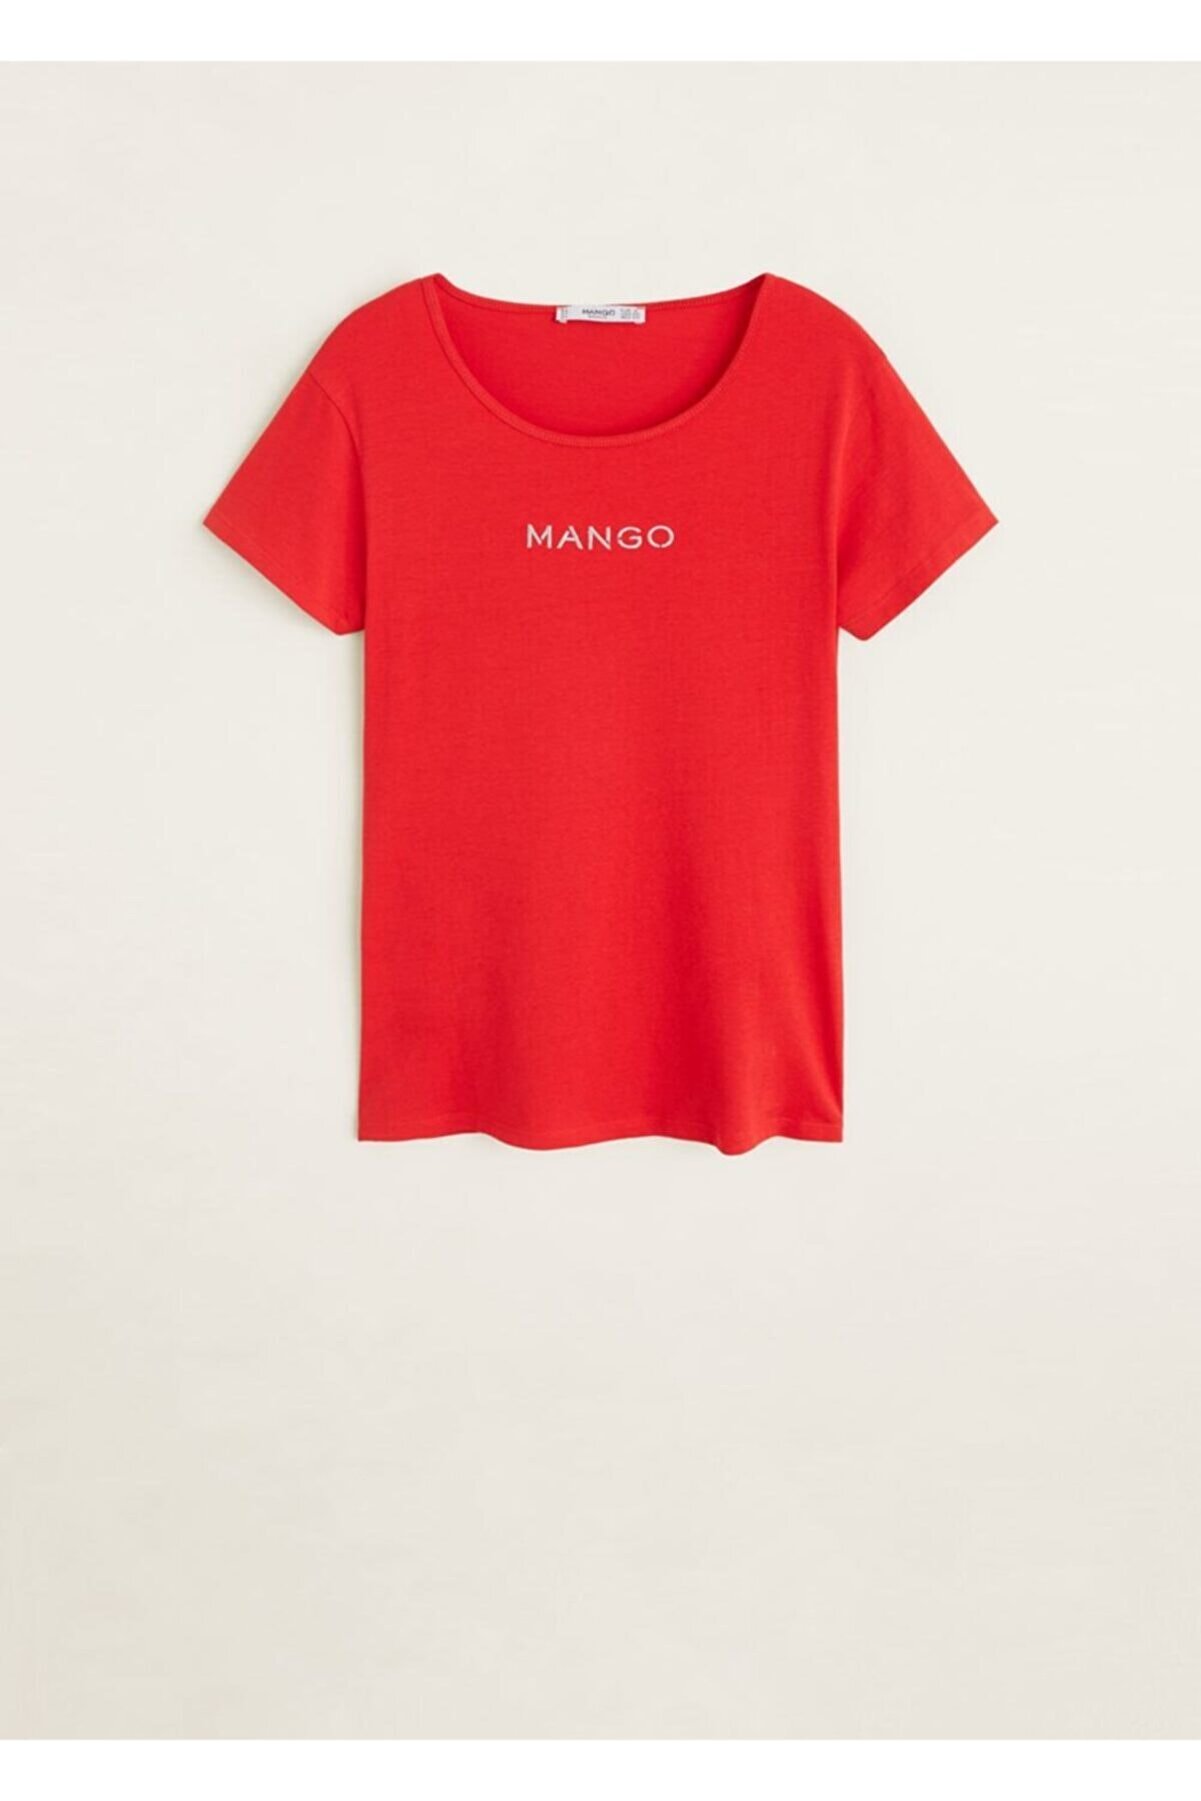 MANGO Kadın Kırmızı Logo İşlemeli Tişört 53030653